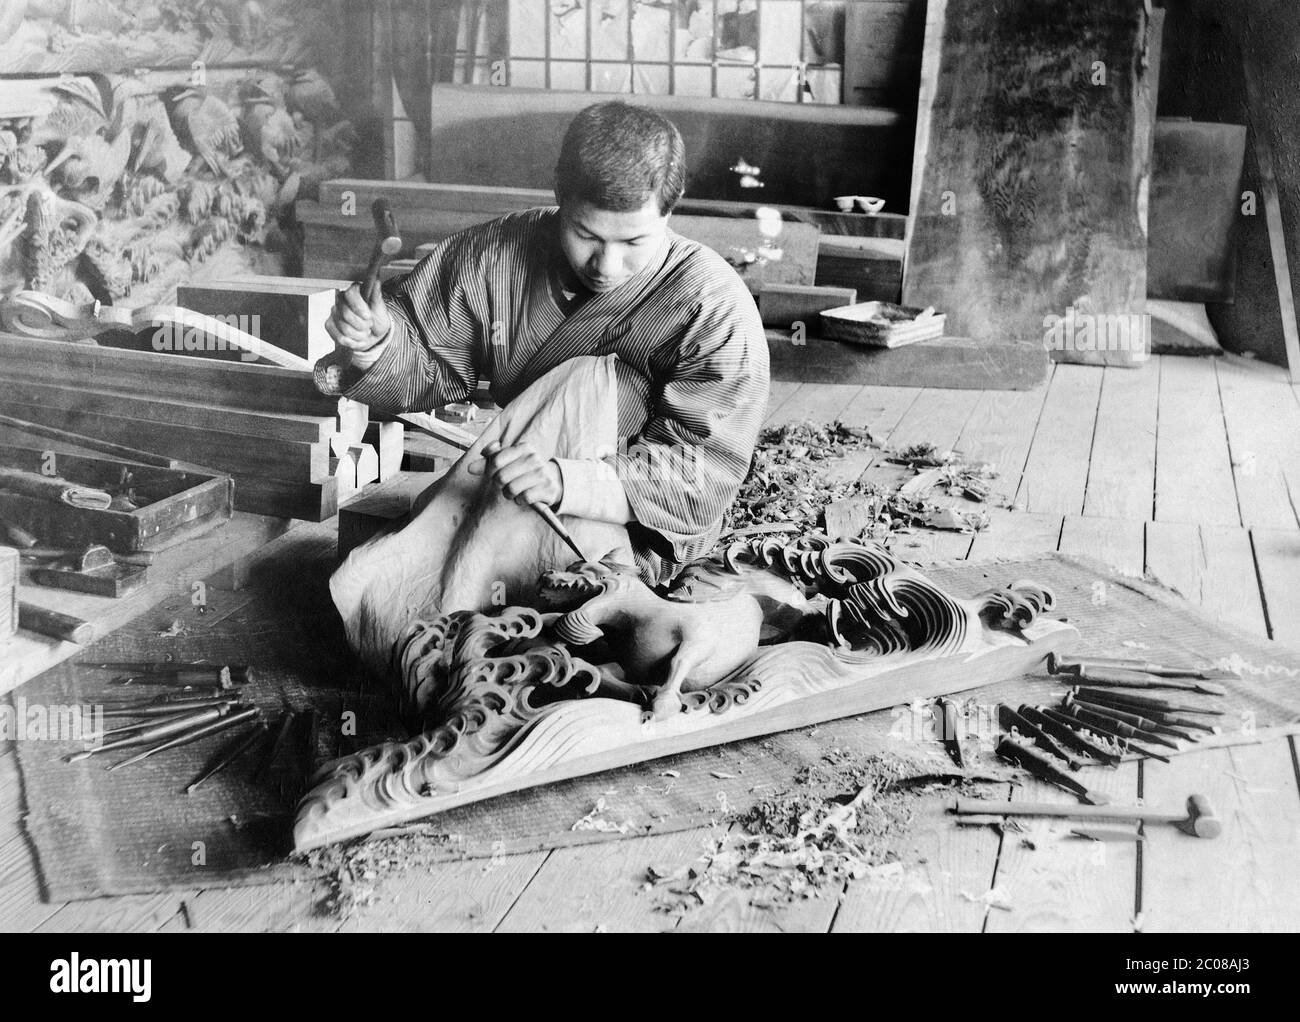 [ 1910s Japon - Dragon de bois de sculpture ] — UN artisan en vêtements traditionnels est en train de sculpter un dragon de bois. Il est entouré de ses outils et de ses morceaux de bois. imprimé argent gélatine vintage du xxe siècle. Banque D'Images